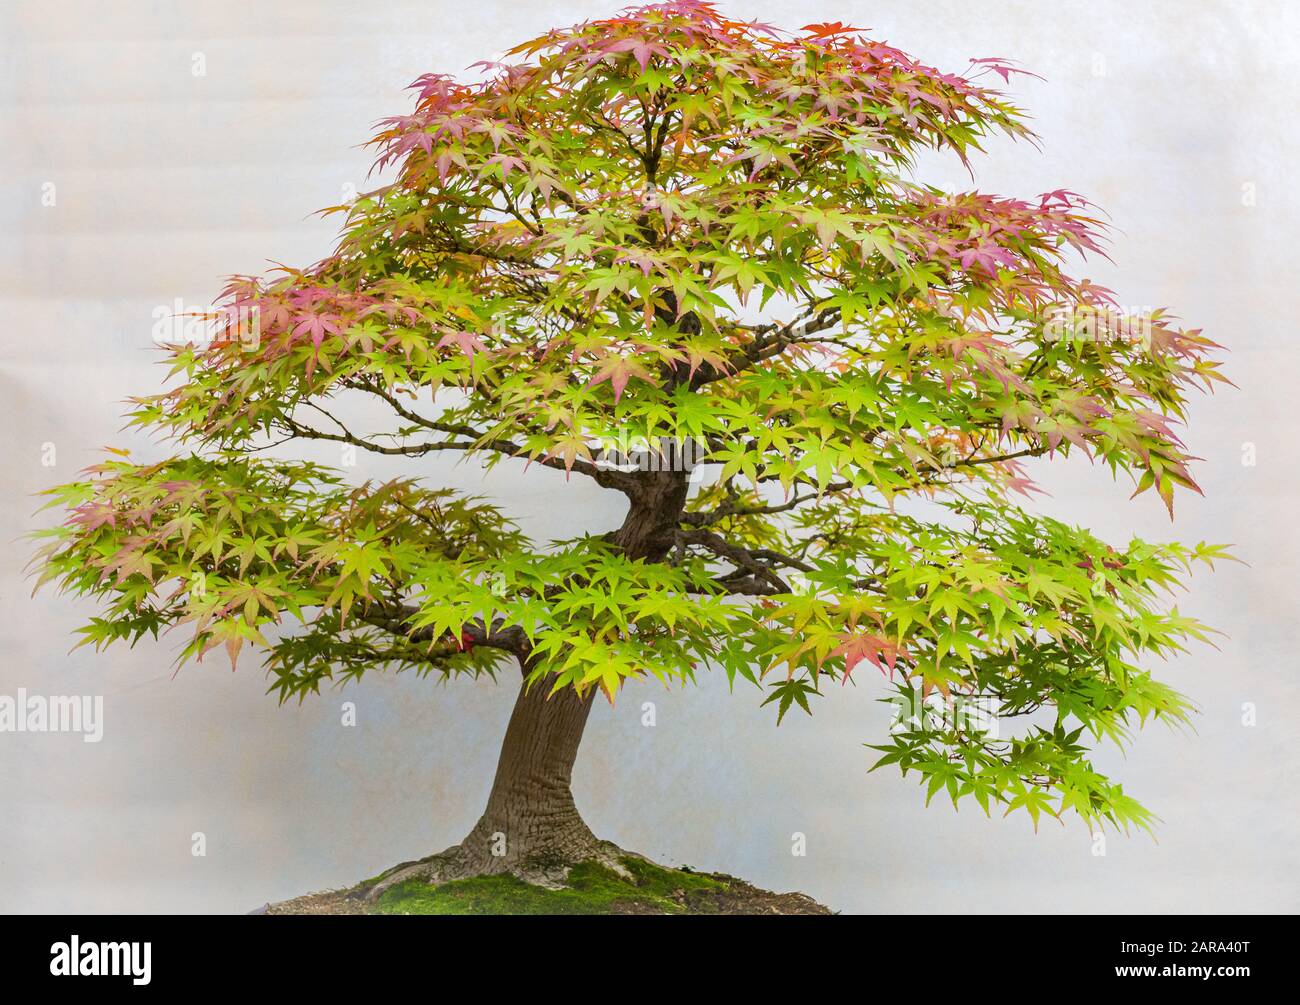 Un pequeño árbol de bonsai en una olla de cerámica. Acer Palmatum. Bonsai árbol de arce japonés. Colores otoñales Foto de stock